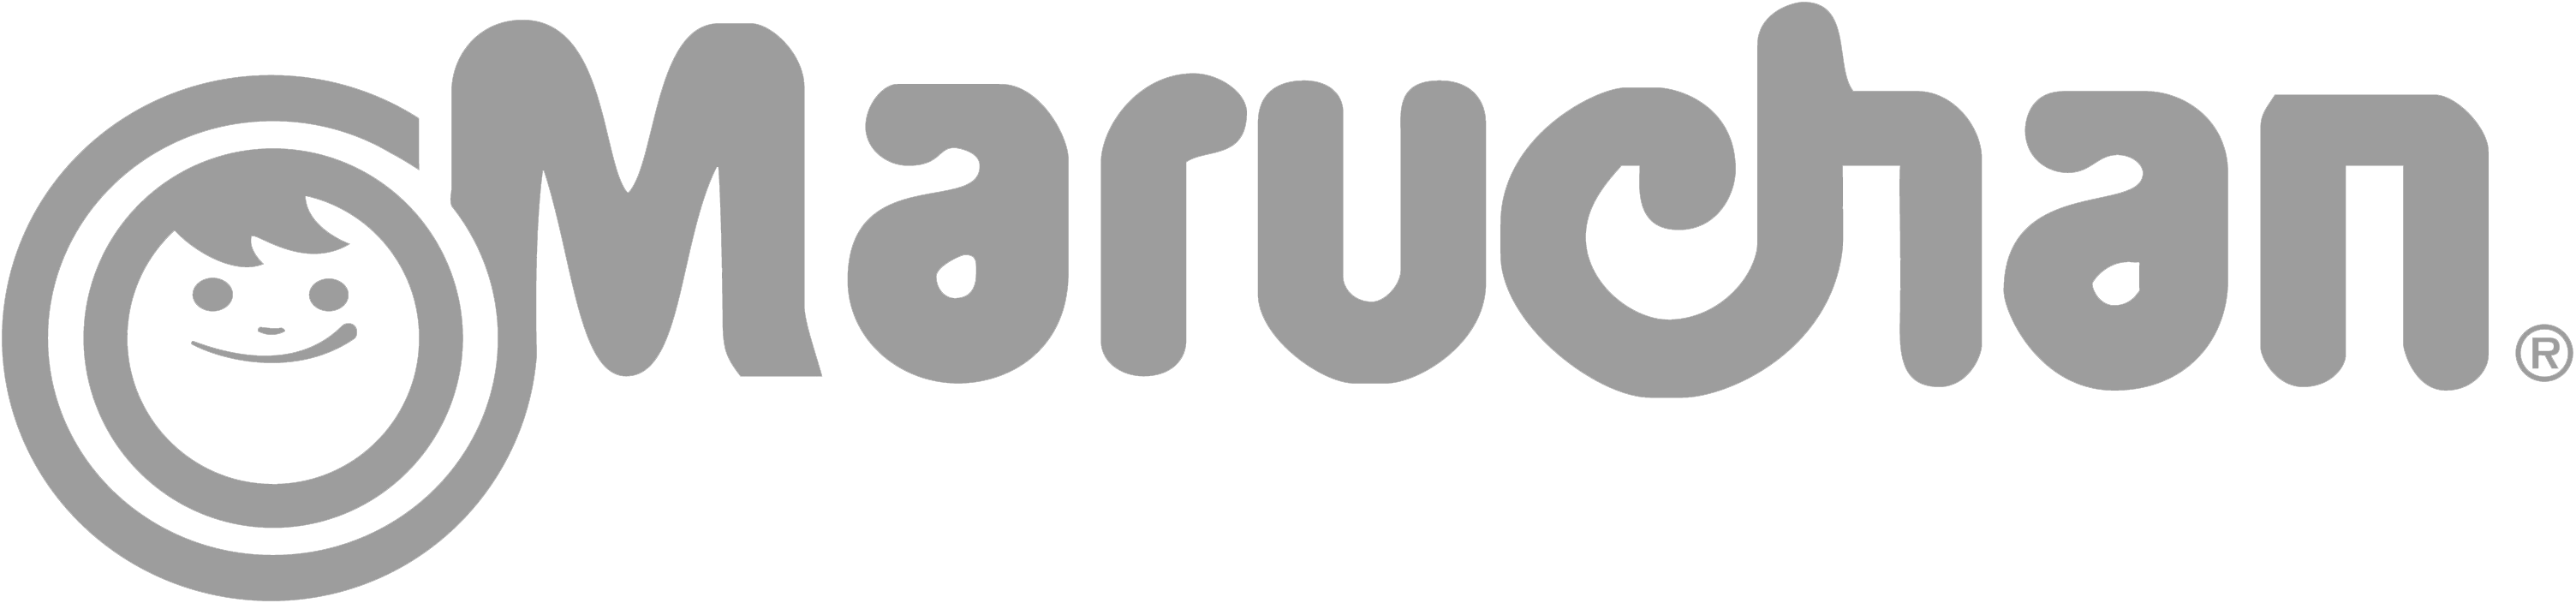 Maruchan_Inc_Logo-1